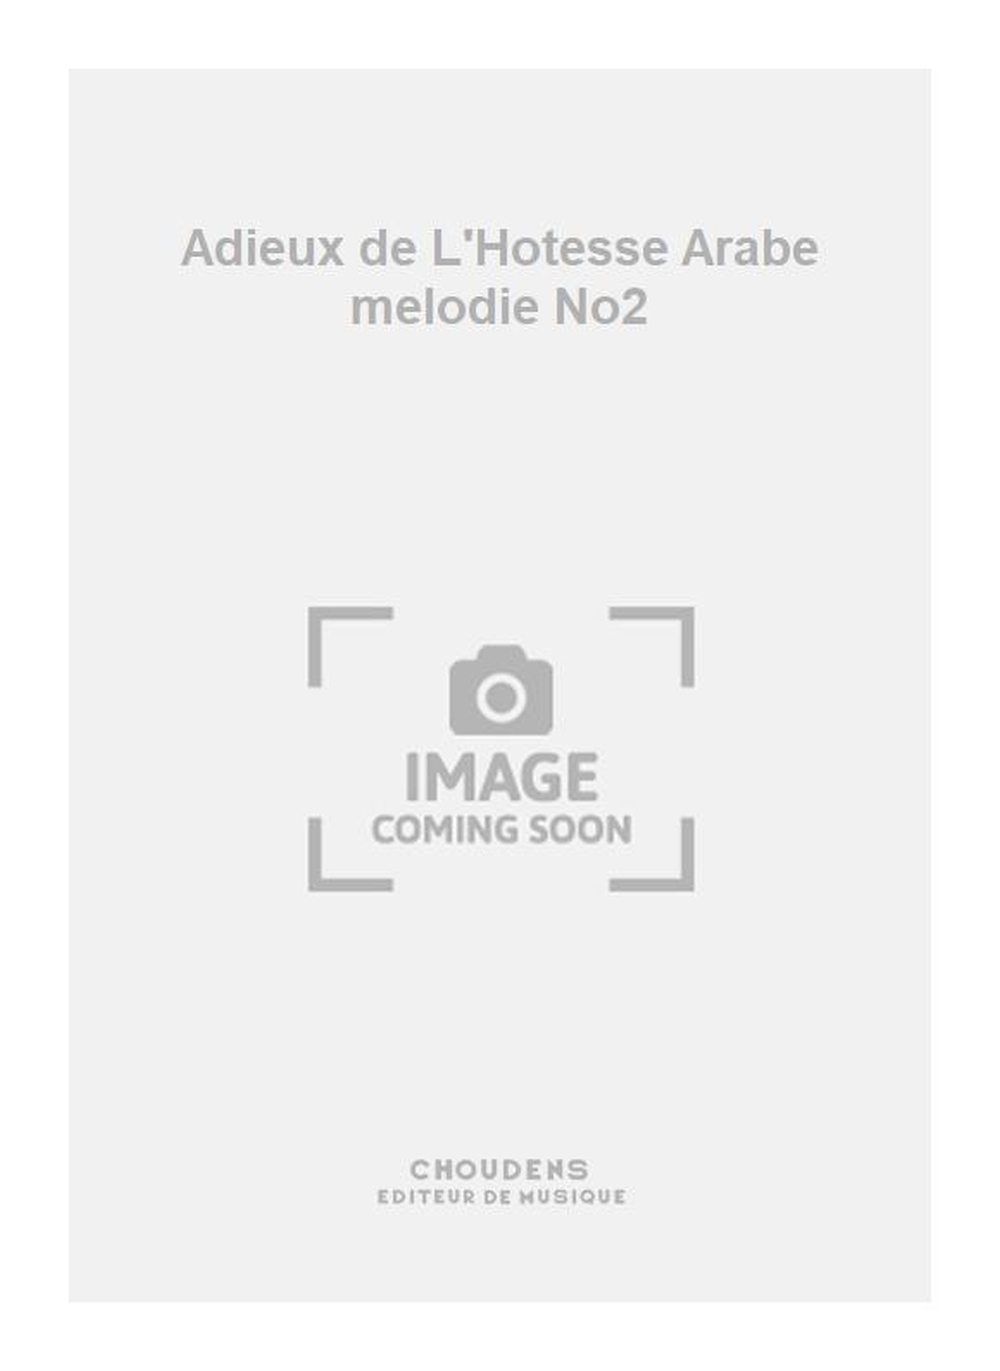 Georges Bizet: Adieux de L'Hotesse Arabe melodie No2